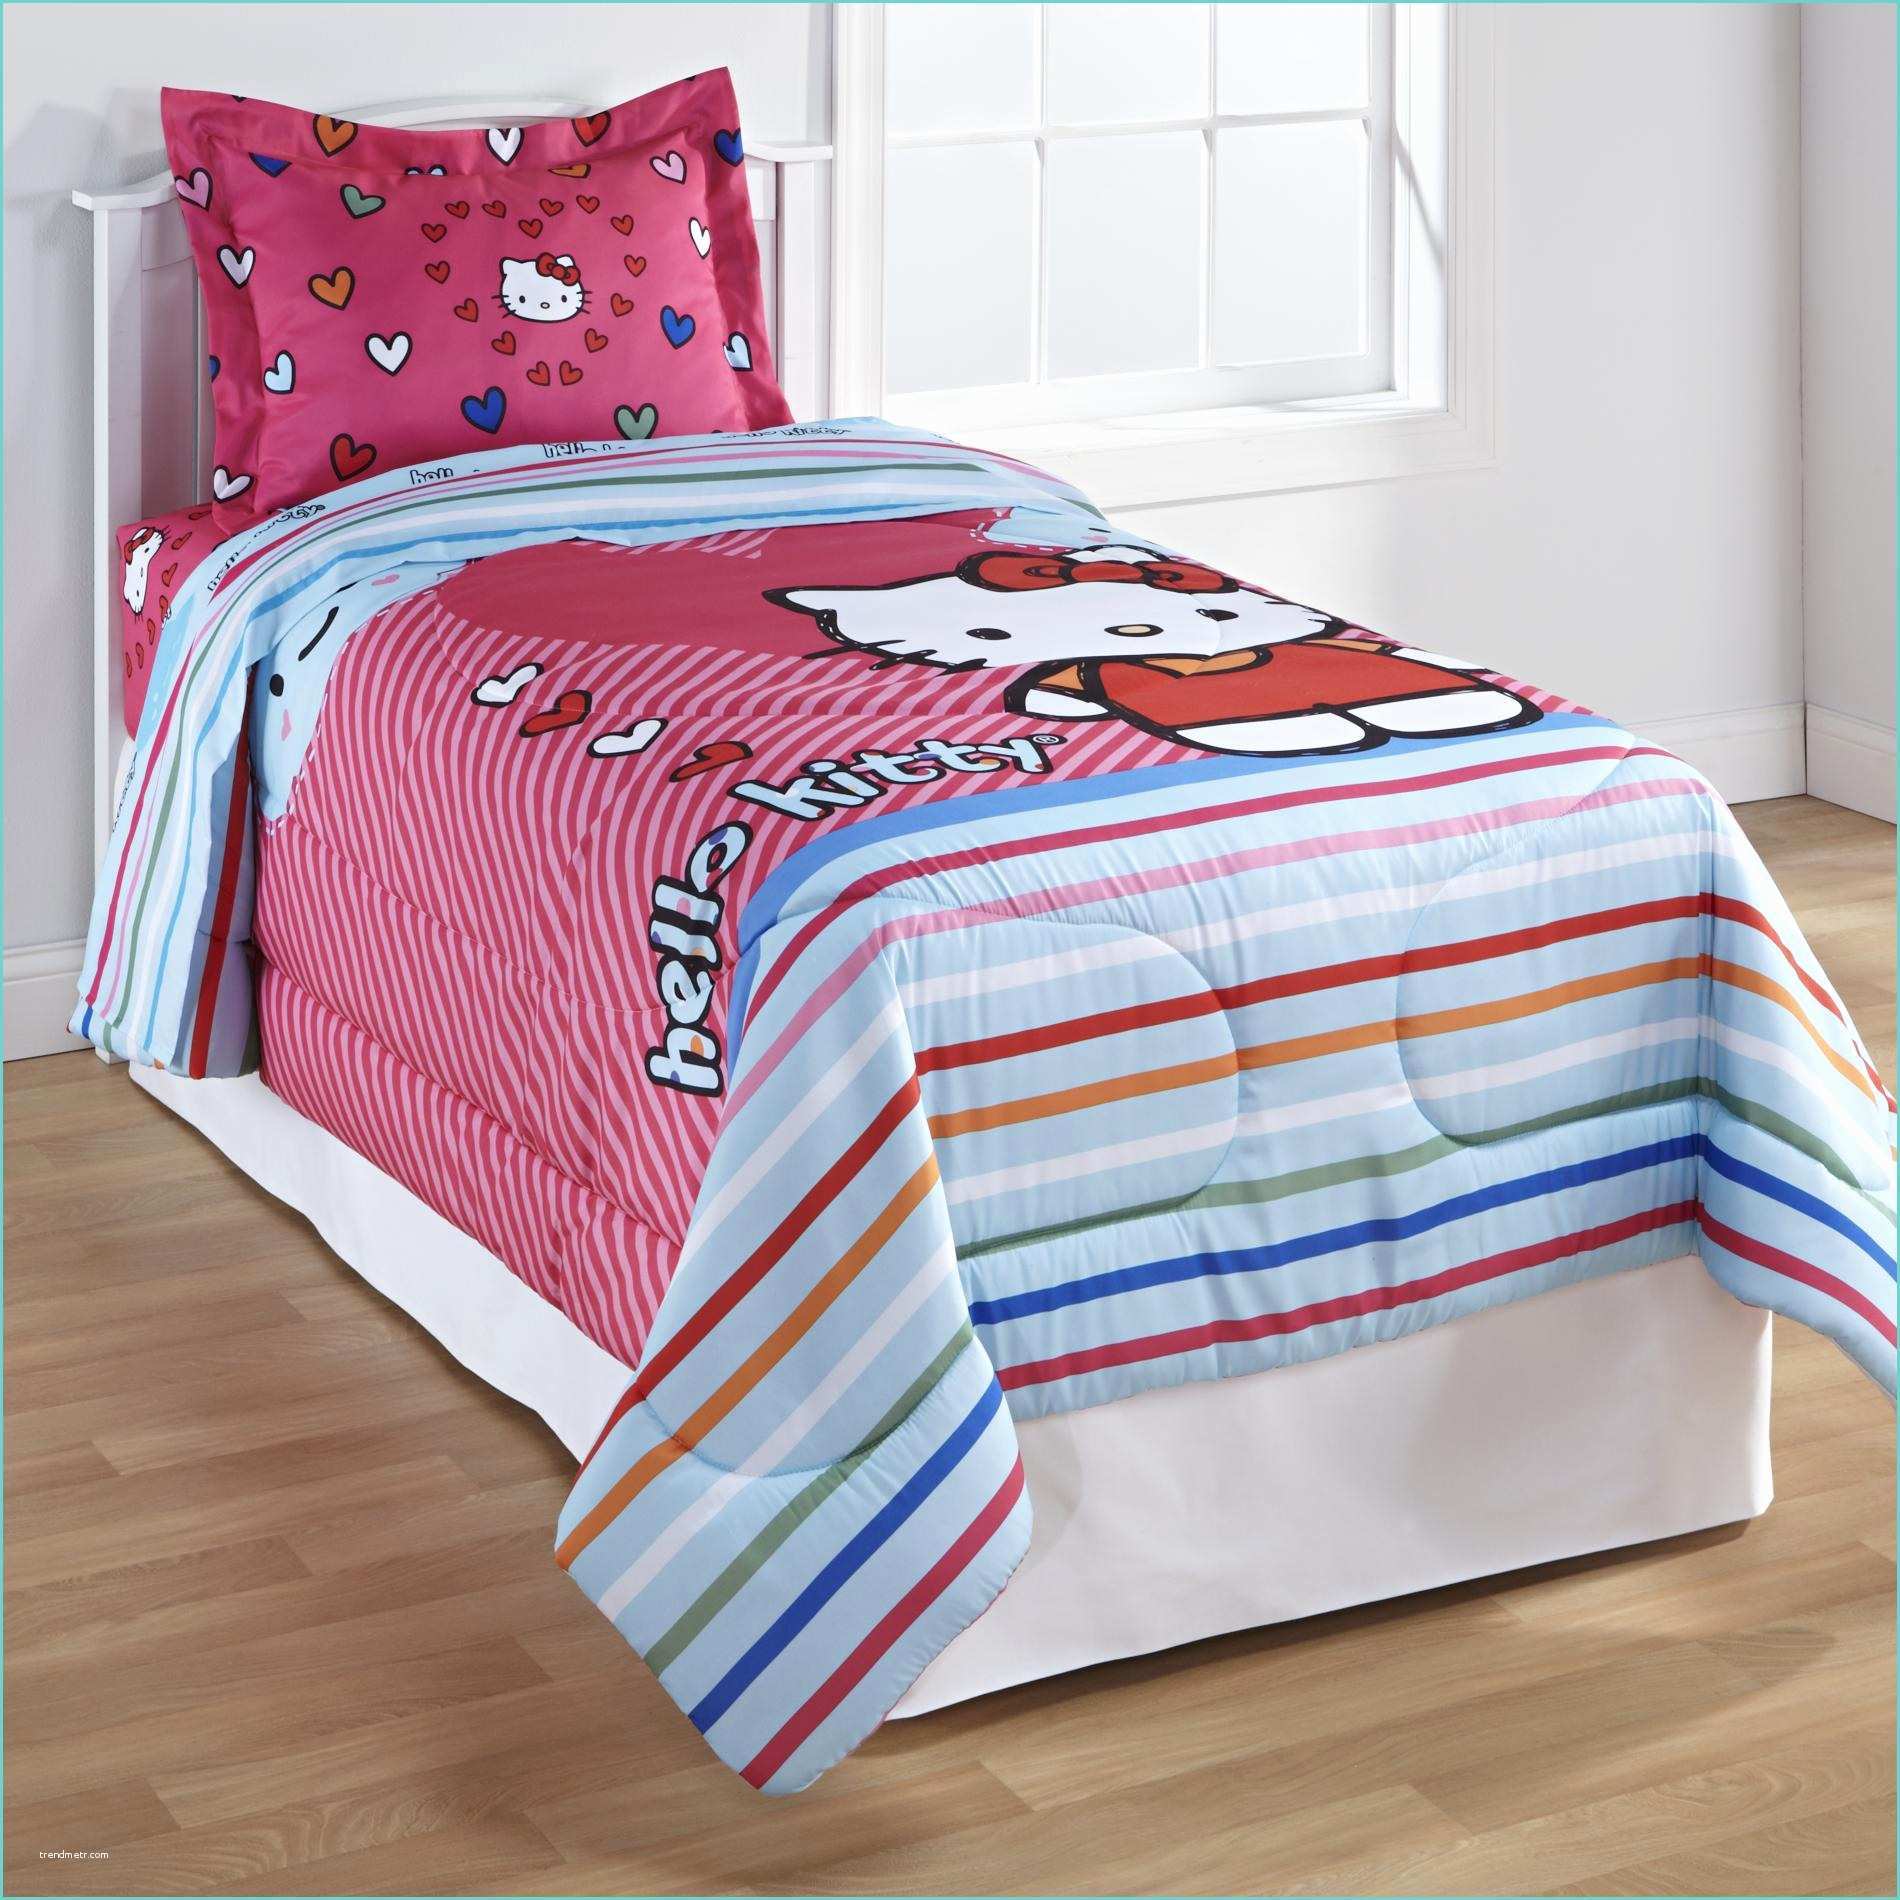 Hello Kitty Comforter Set Hello Kitty Bedding Set Full Sizeseaxhel1 From Sears